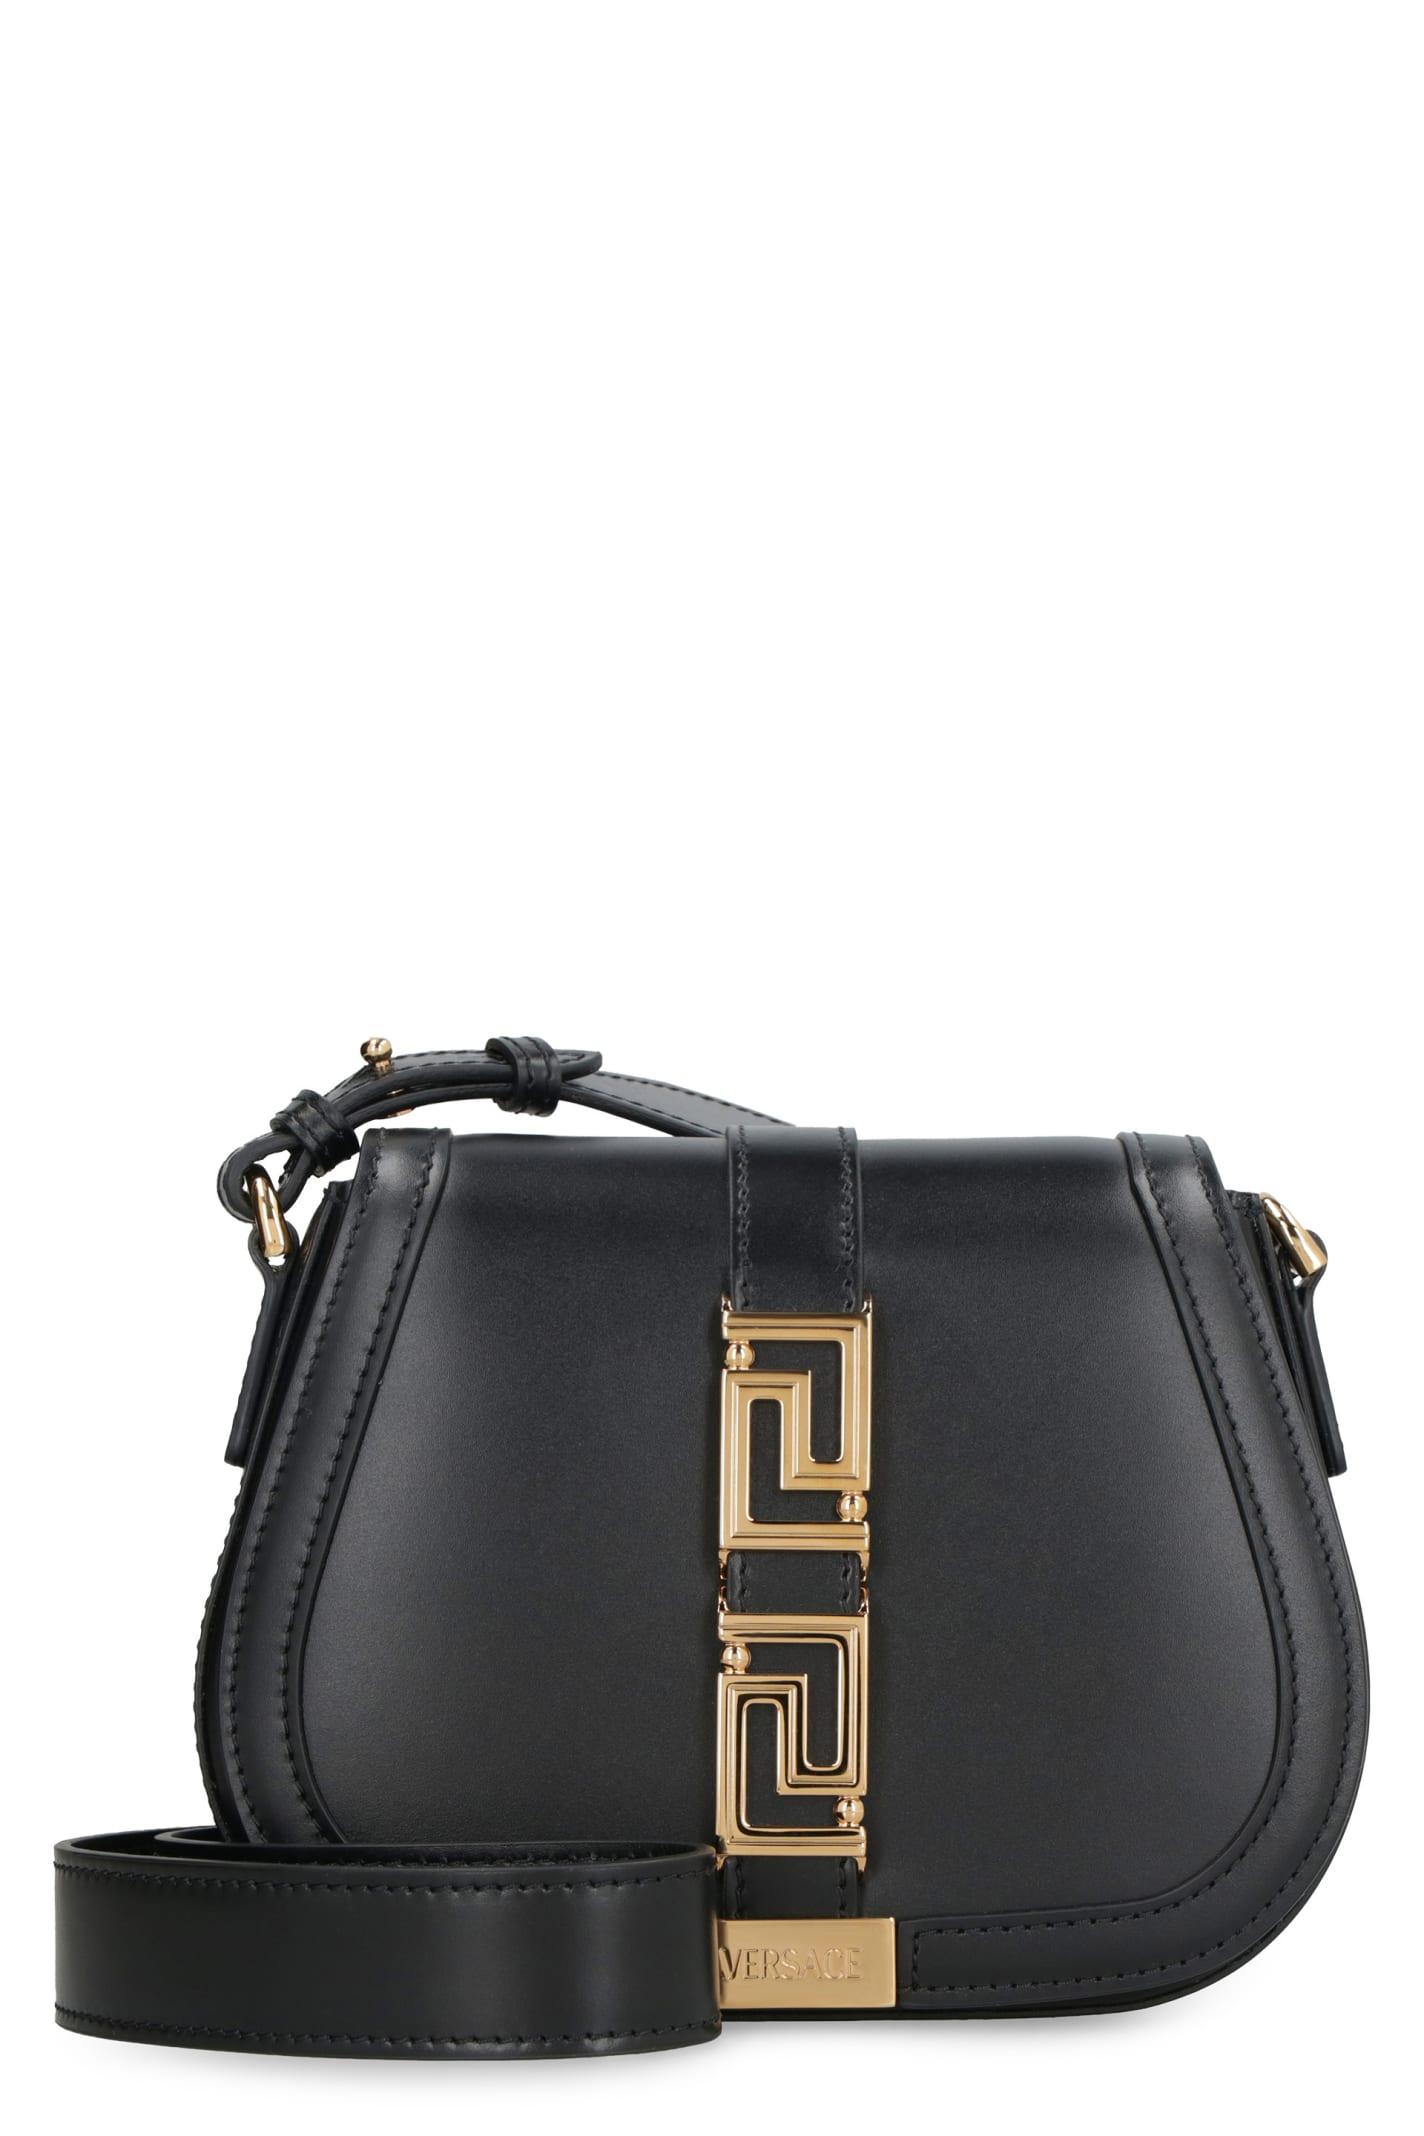 Versace Greca Goddess Leather Shoulder Bag in Black | Lyst